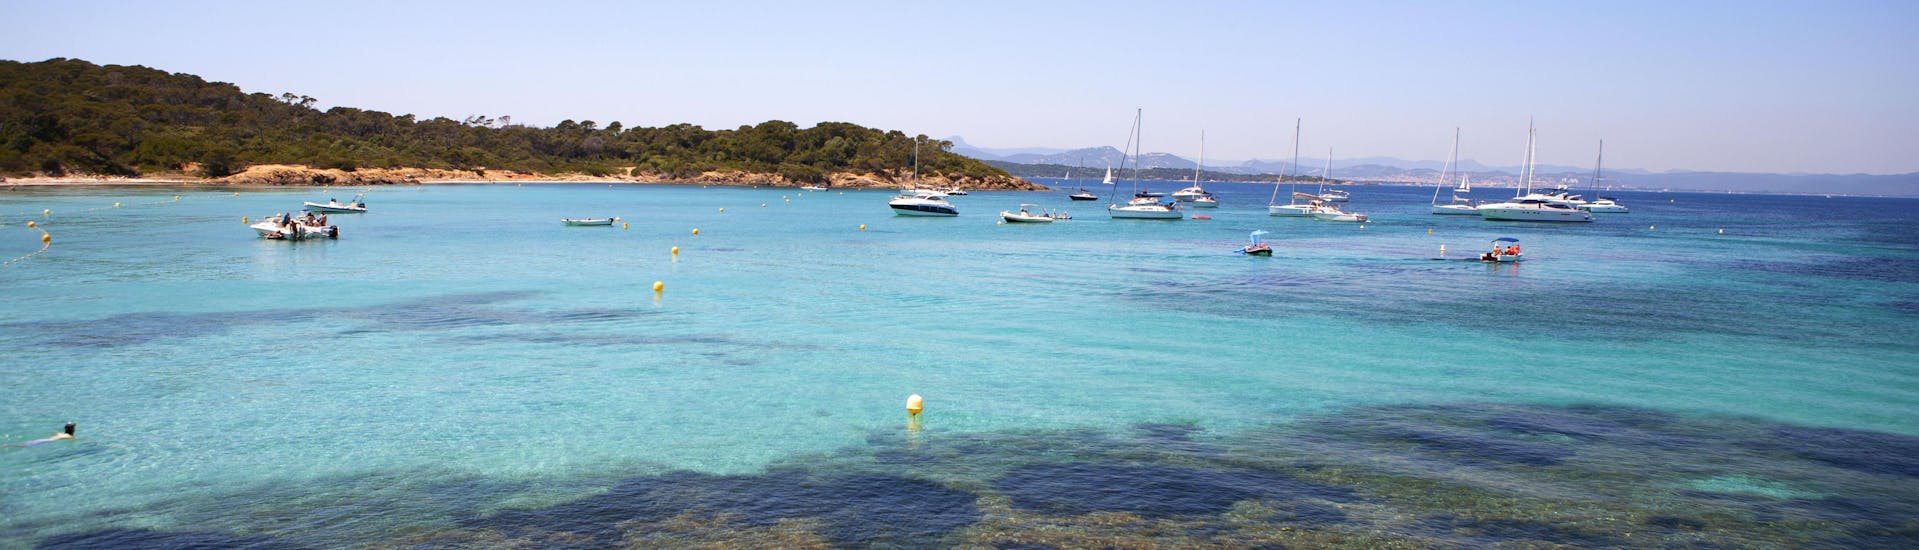 La merveilleuse côte de Bandol, une destination populaire pour les balades en bateau sur la Côte d'Azur.